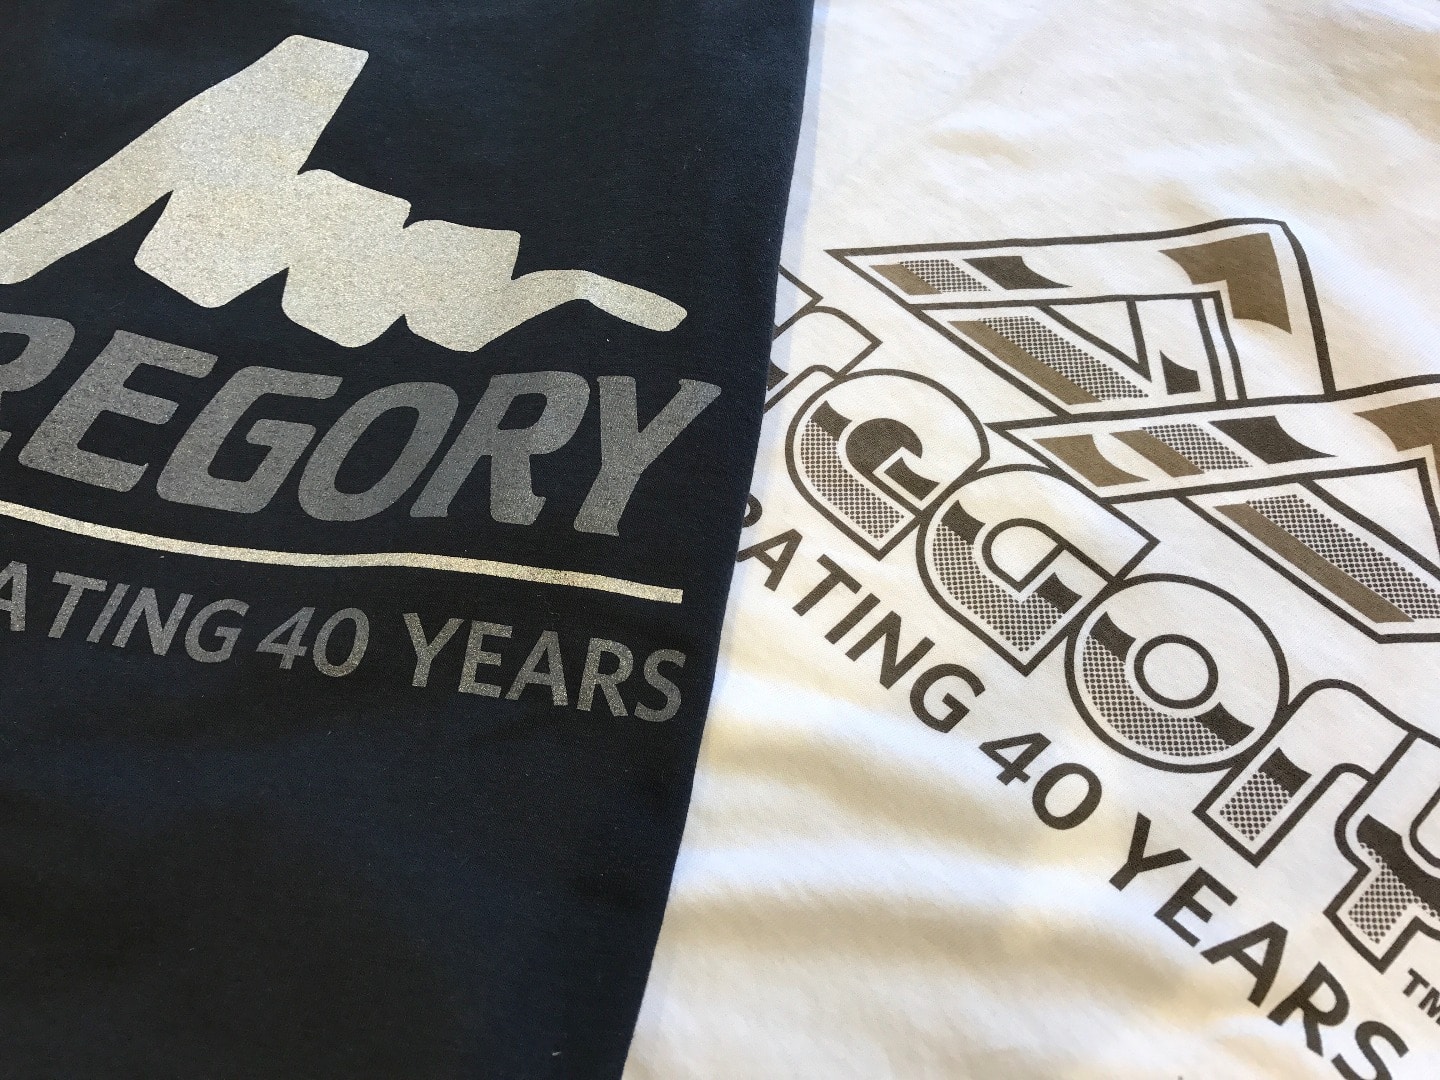 グレゴリー 40周年 Tシャツ S プロダクツロゴ 紫 茶 限定 GREGORY